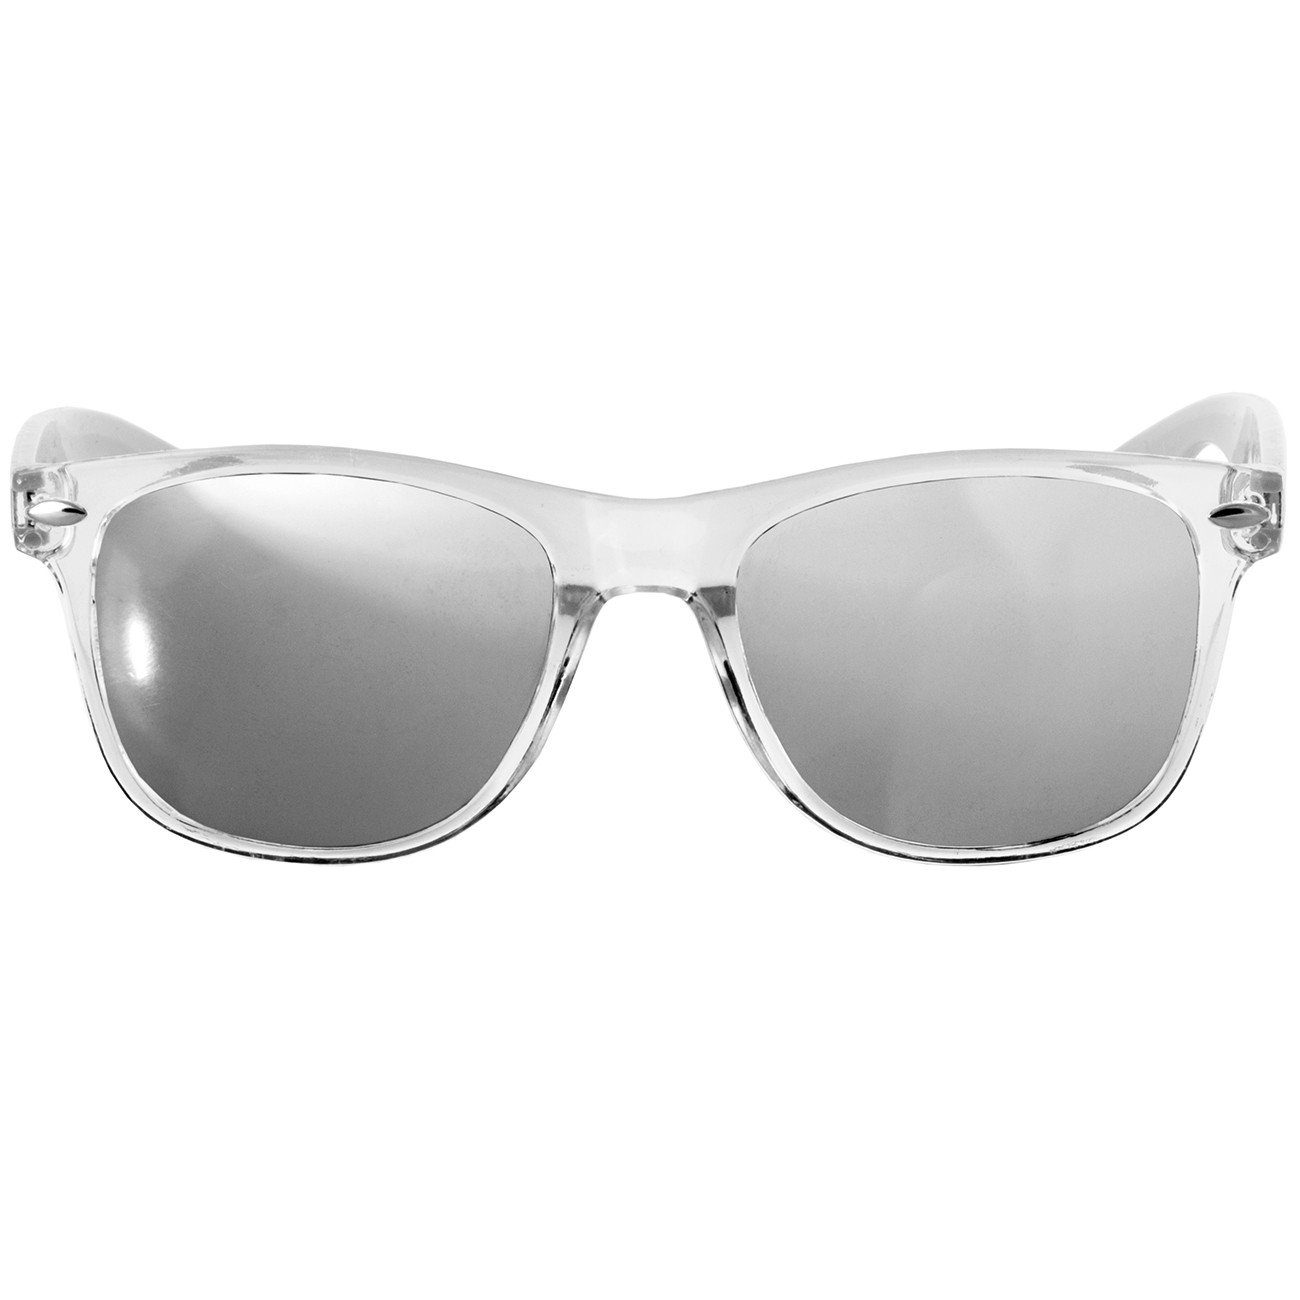 / weiß silber verspiegelt Designbrille Sonnenbrille Caspar SG017 Damen RETRO